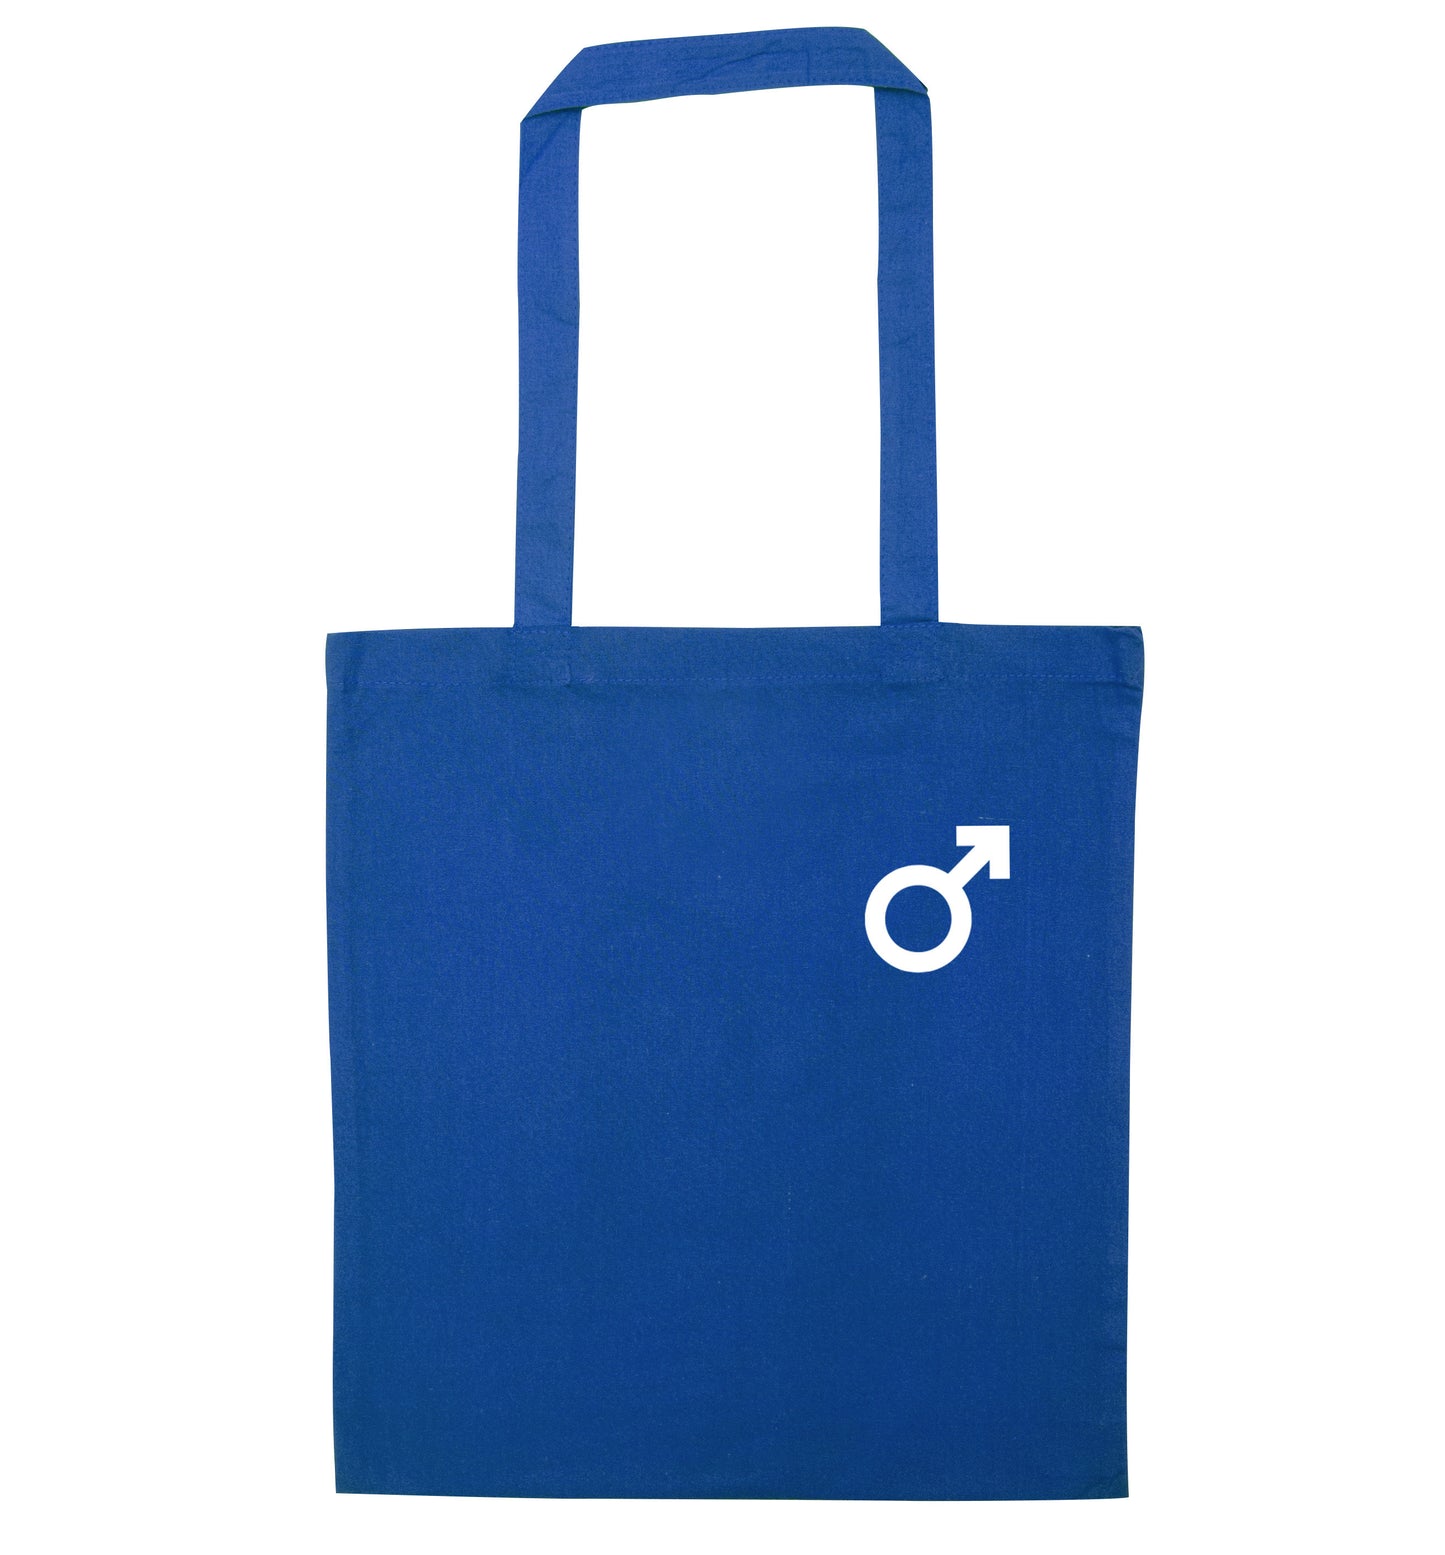 Male symbol pocket blue tote bag